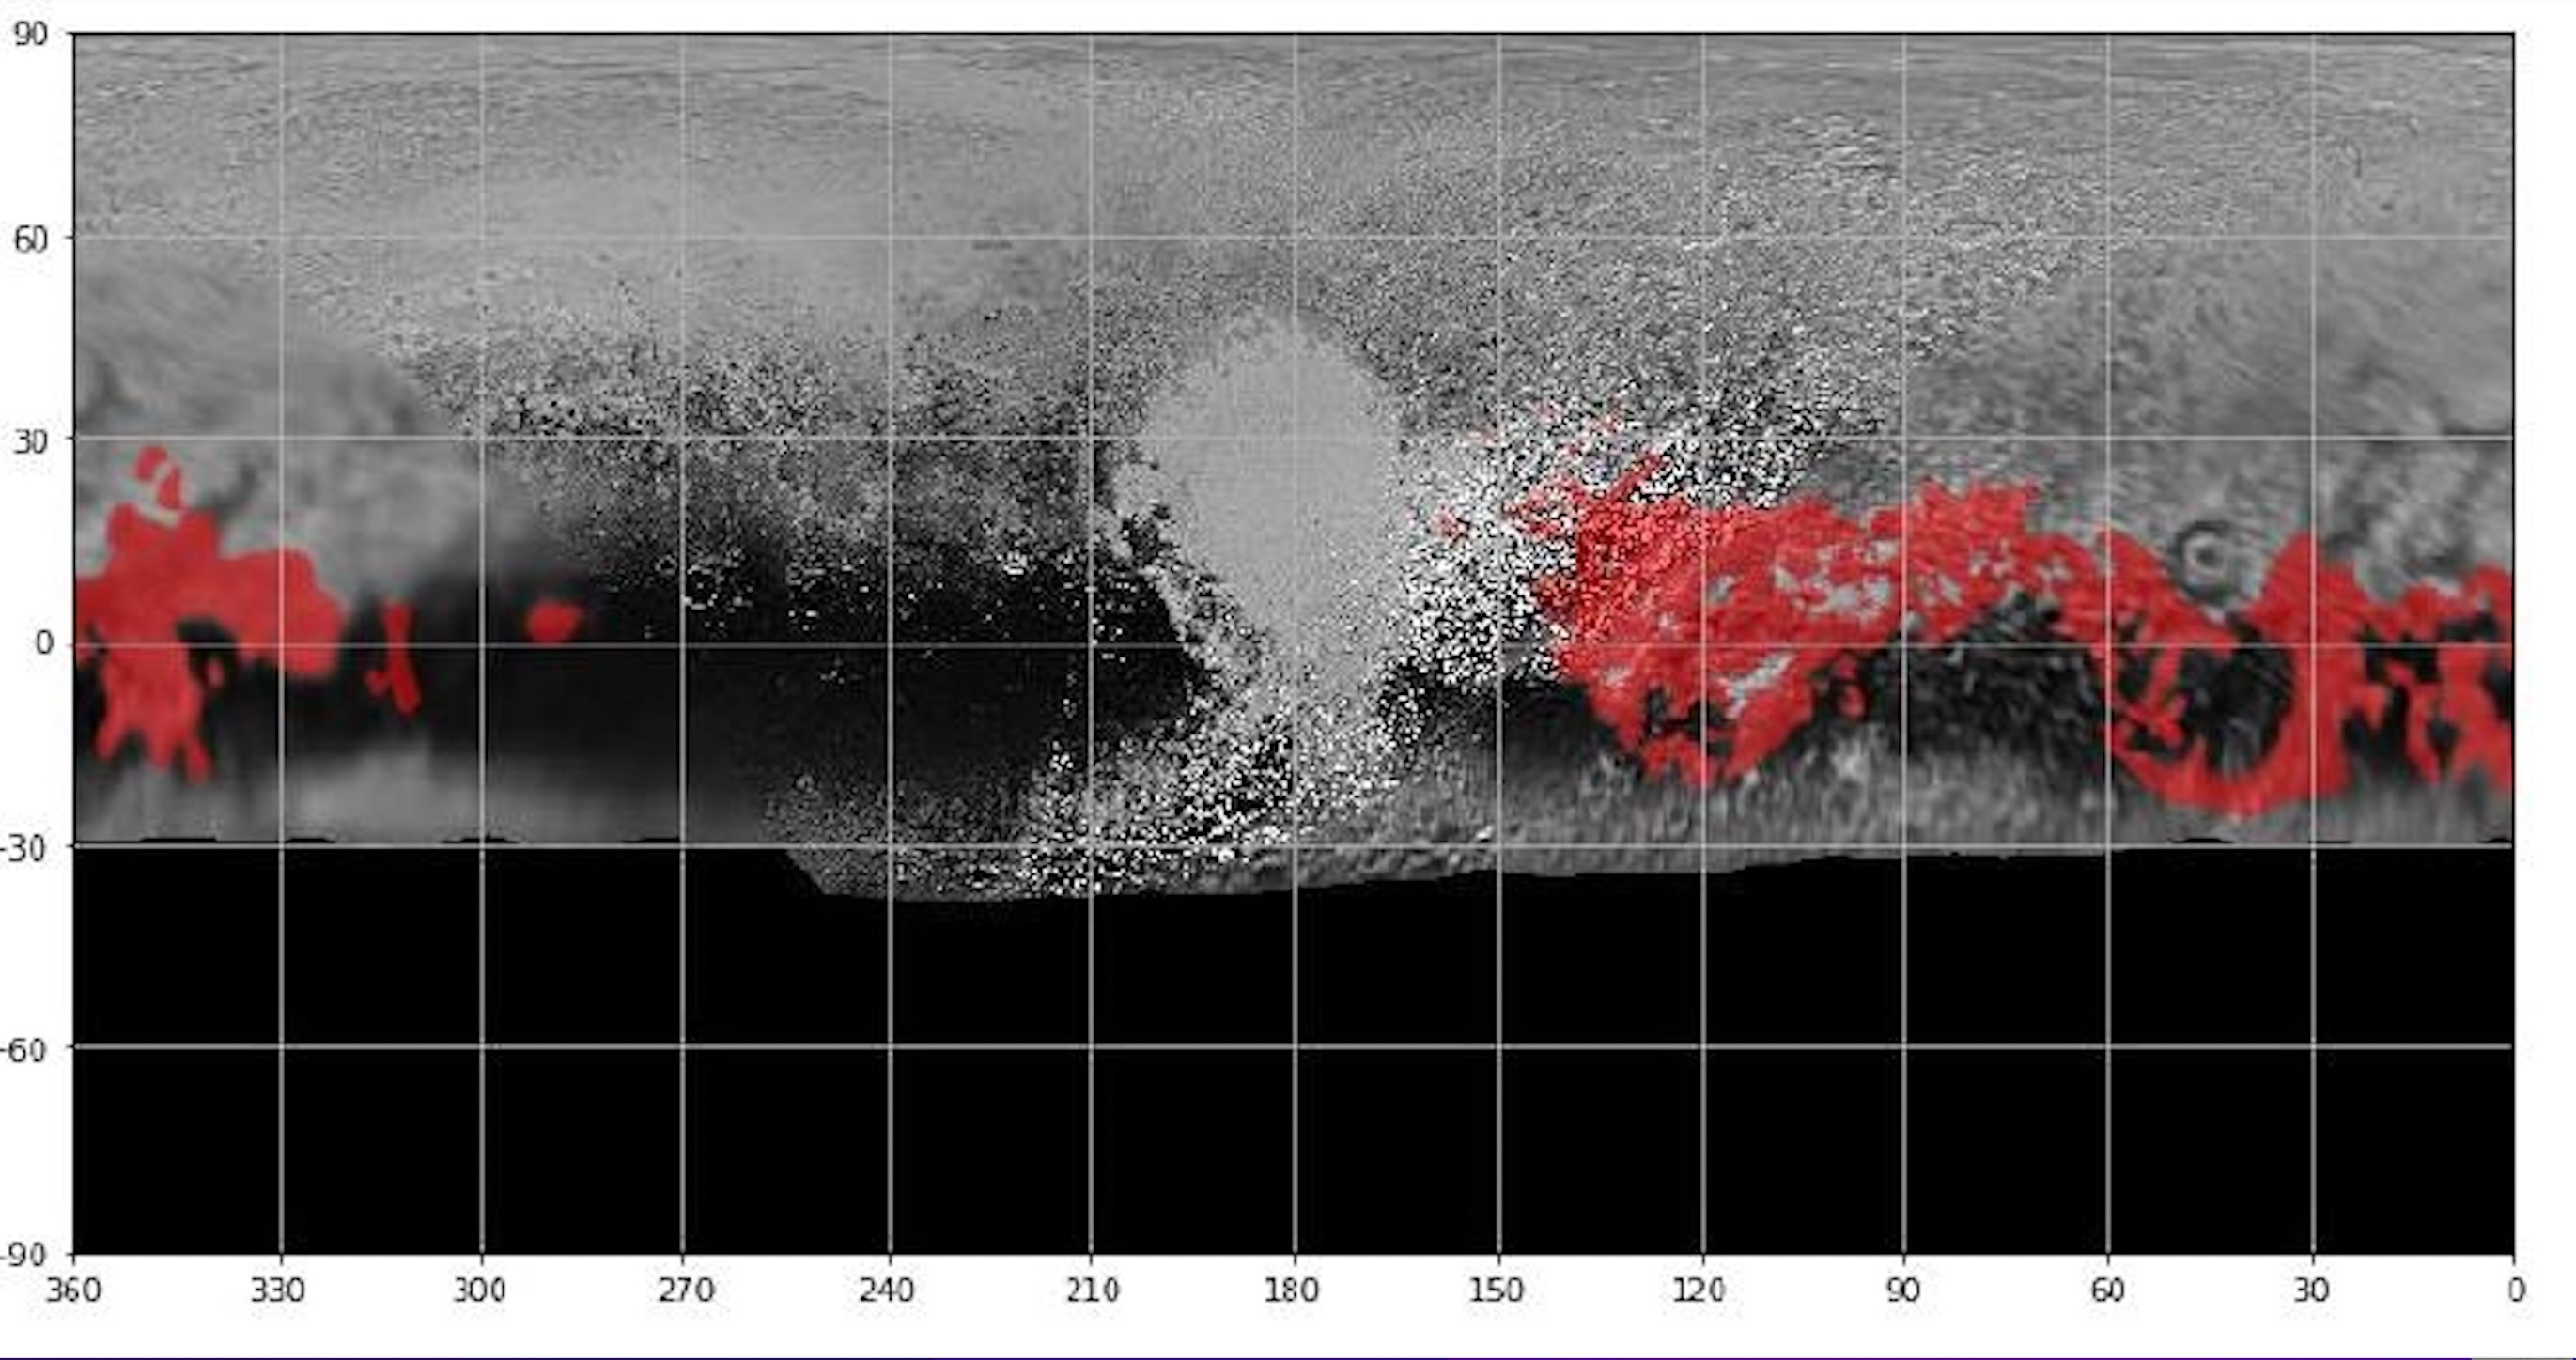 ما يسميه علماء نيوهورايزنز المناظر الطبيعية البيضاء - انعكاس مباشر للمناخ المتغير للمناظر الطبيعية على بلوتو ، والمميز باللون الأحمر على هذه الخريطة - يمتد على جزء كبير من الكوكب.